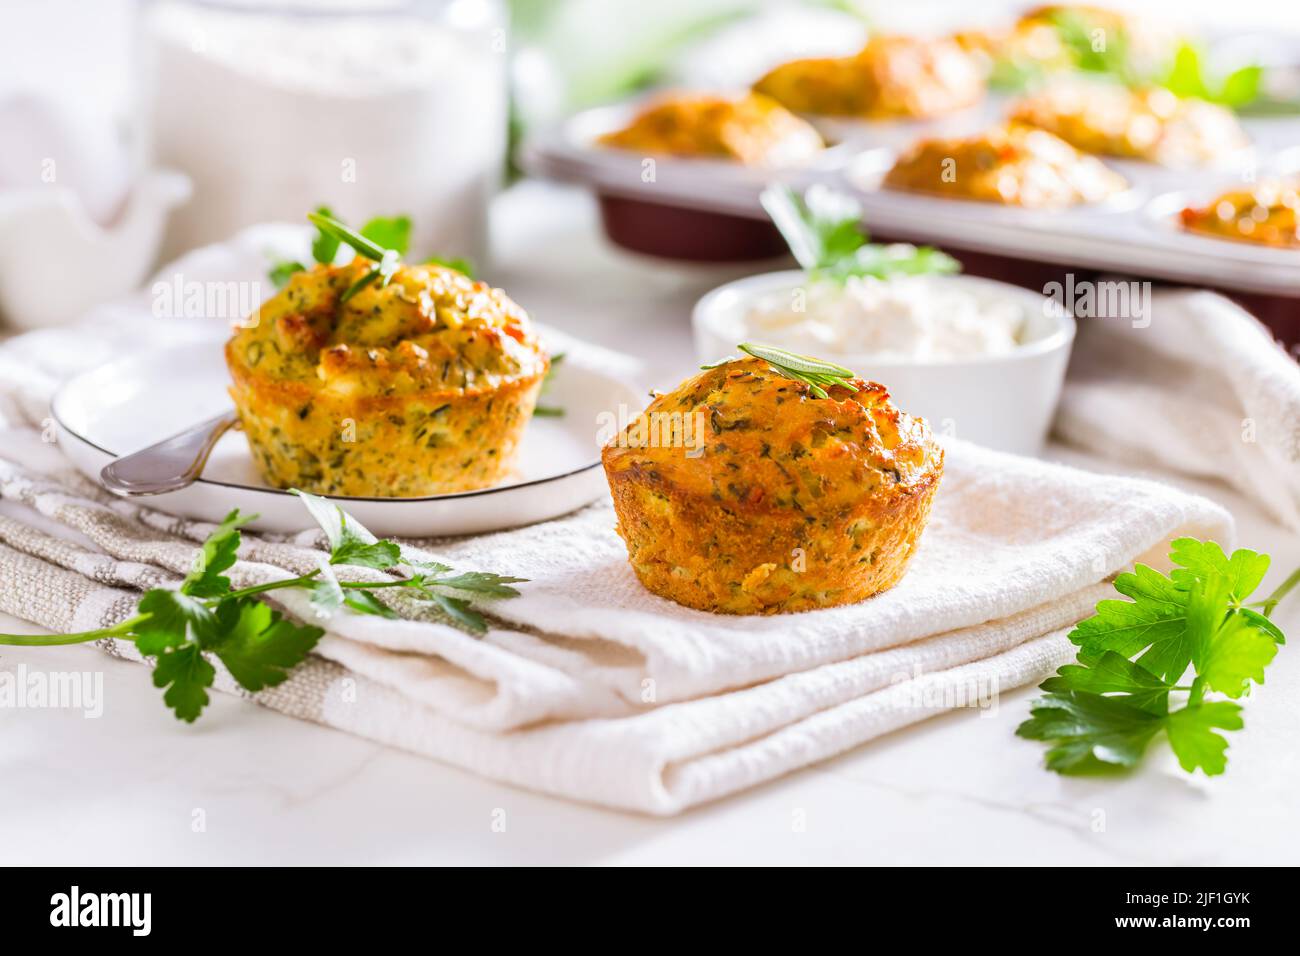 Délicieux muffins au courgettes maison avec fromage feta sur une table de cuisine blanche Banque D'Images